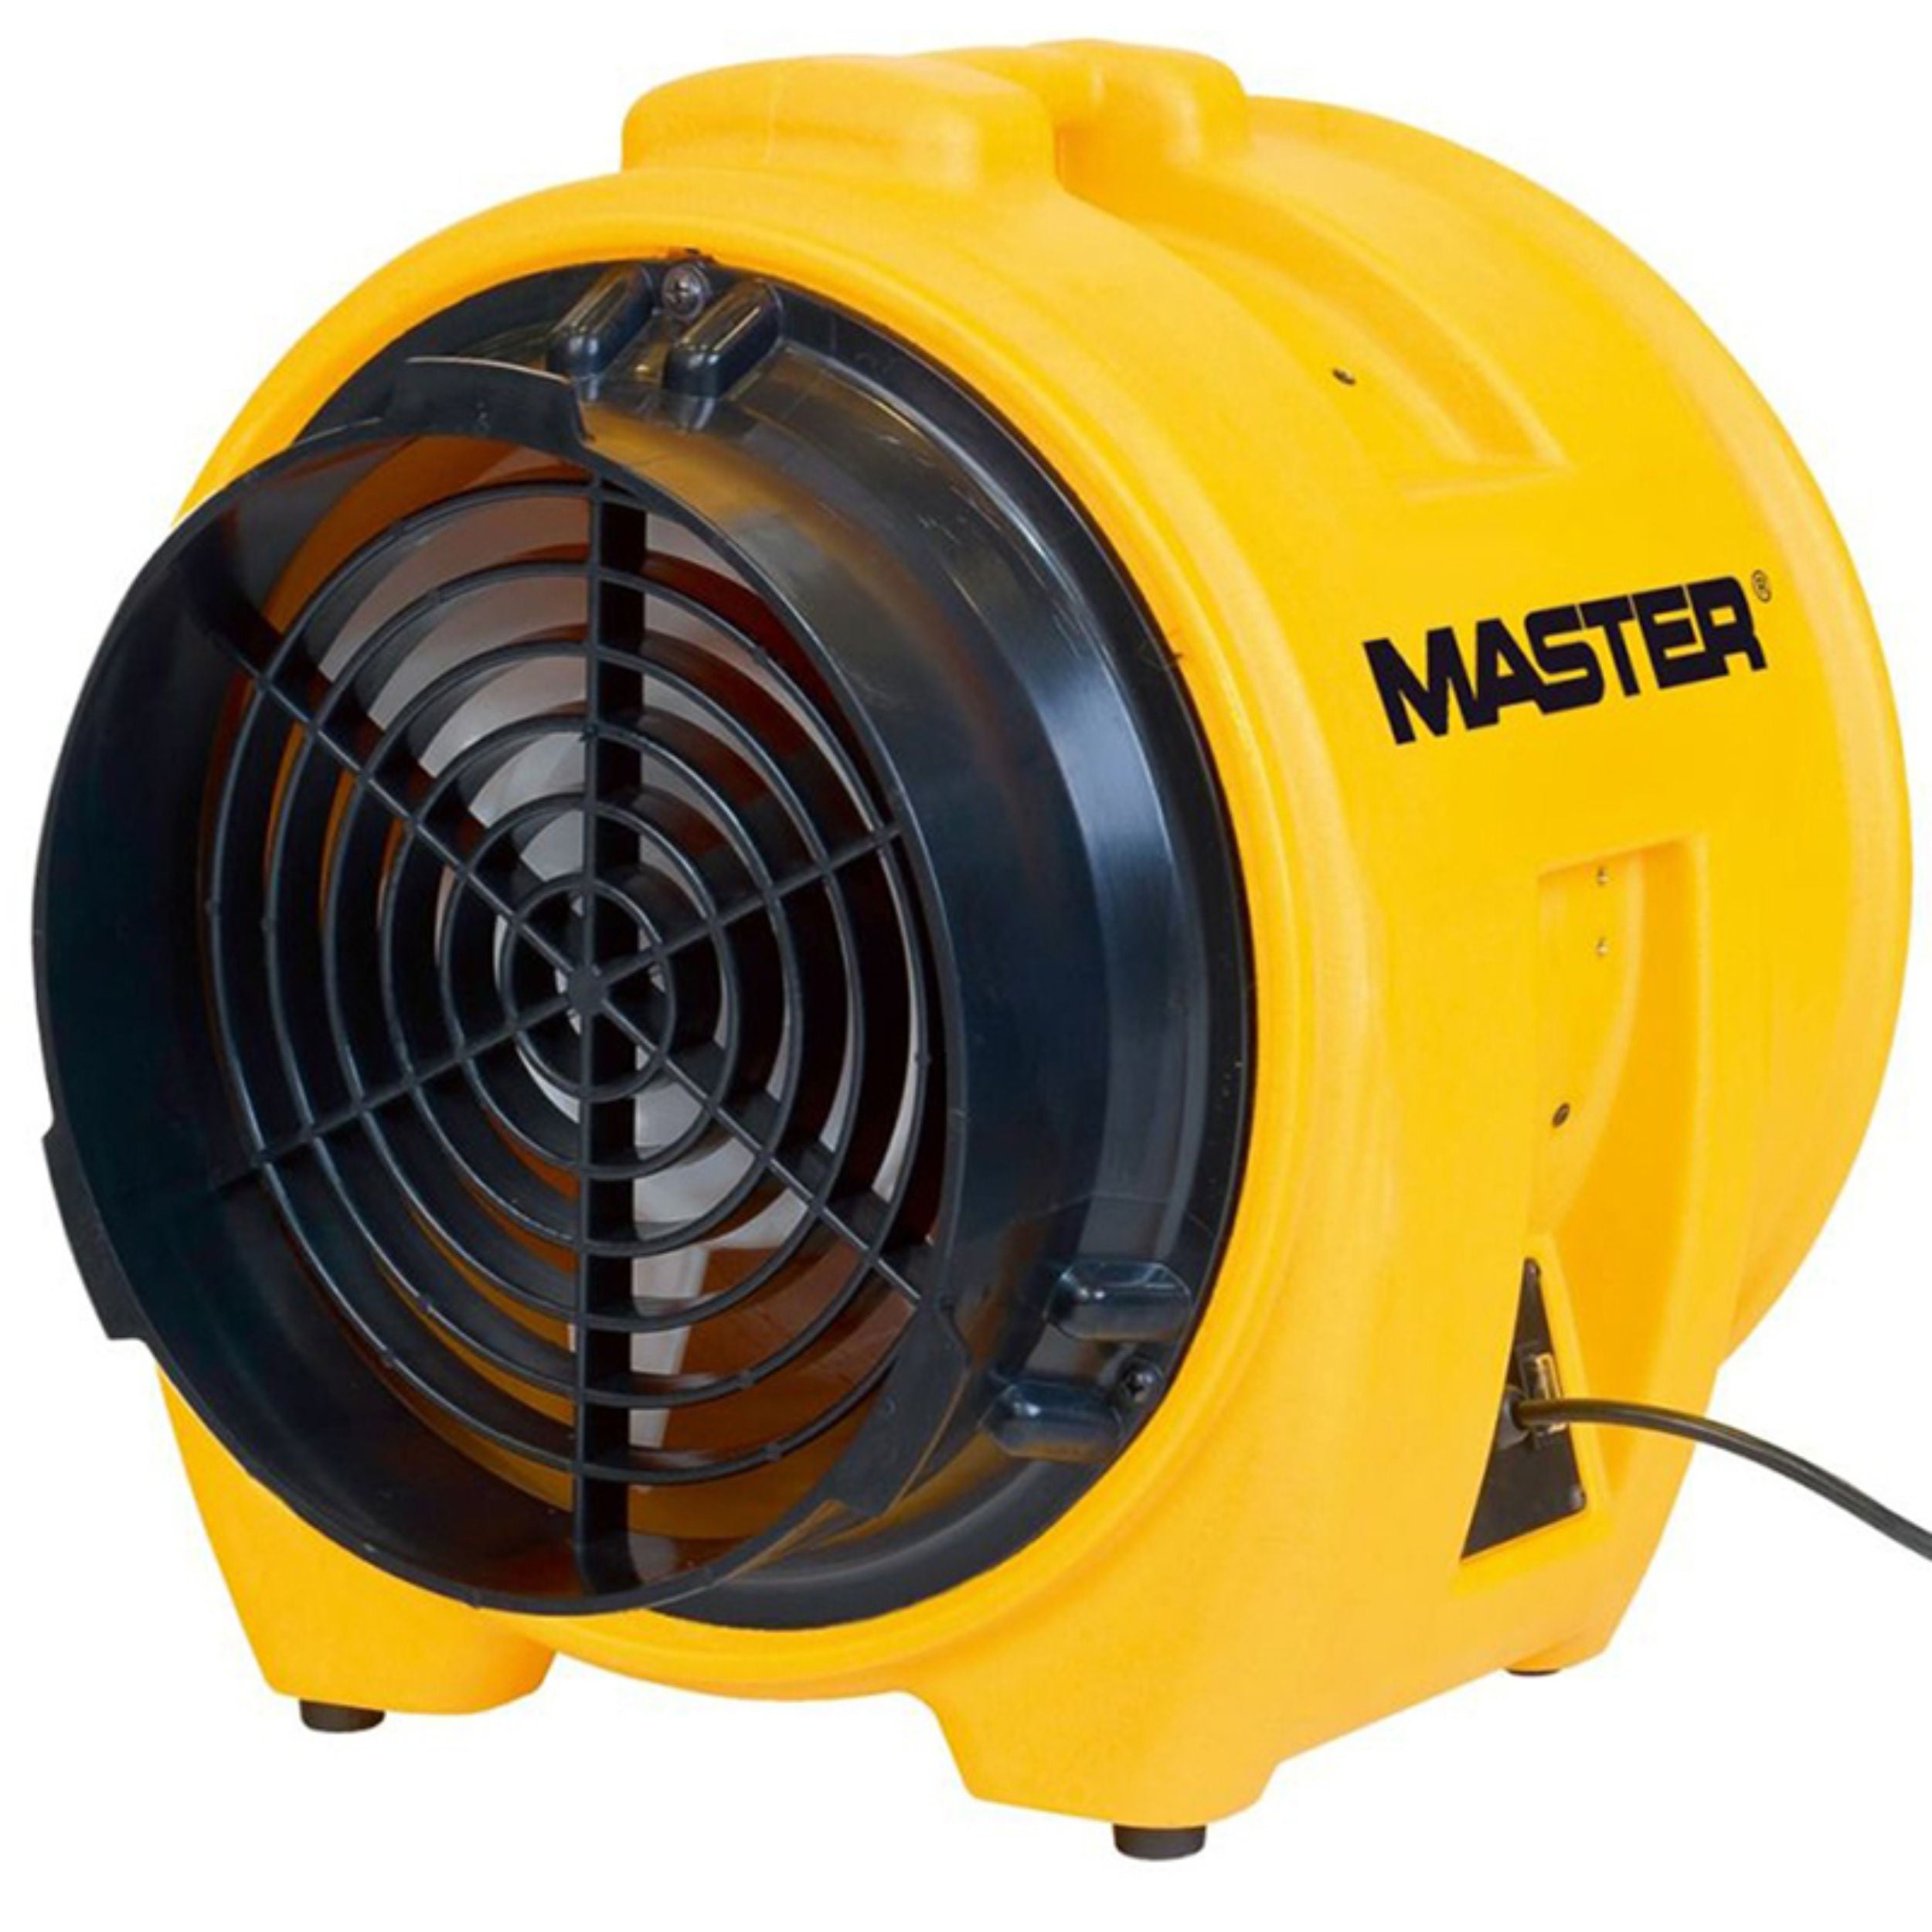 Ventilator industrial Master BL8800, 7800 mc/h, 750 W, 510 x 580 x 530 mm